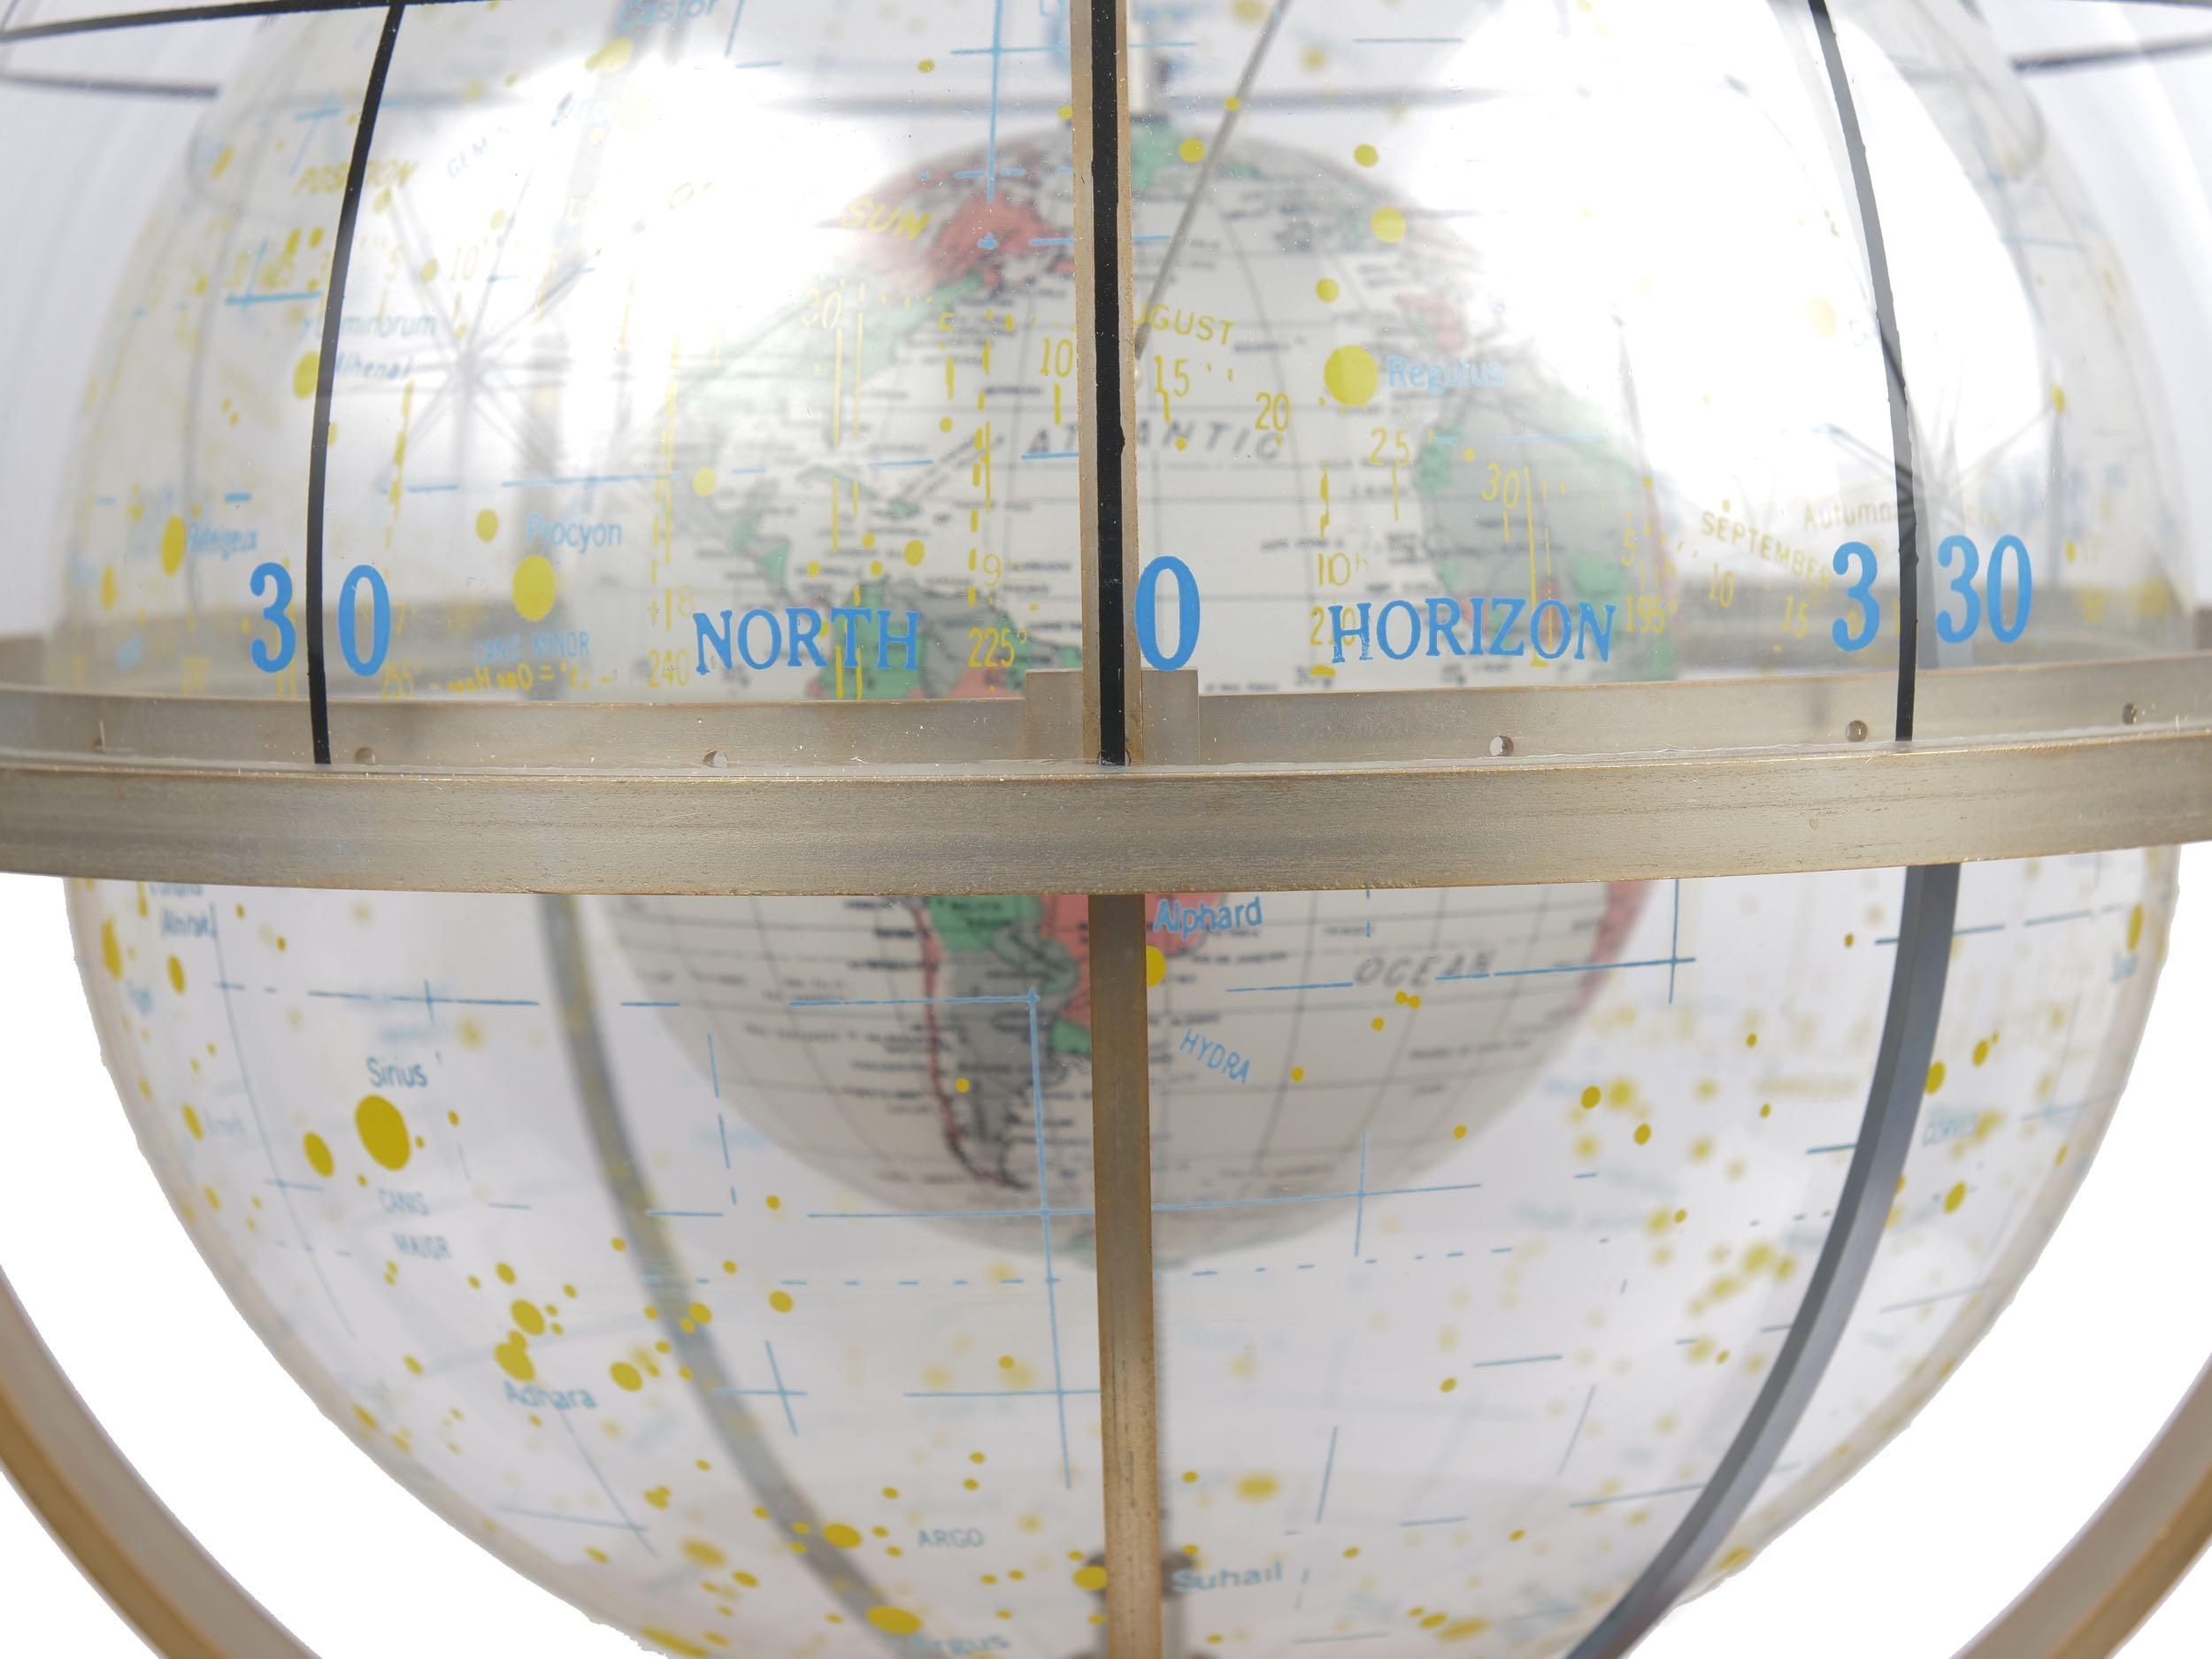 Farquhar Celestial Navigation Armillary Sphere Globe for Dept. of Navy 1